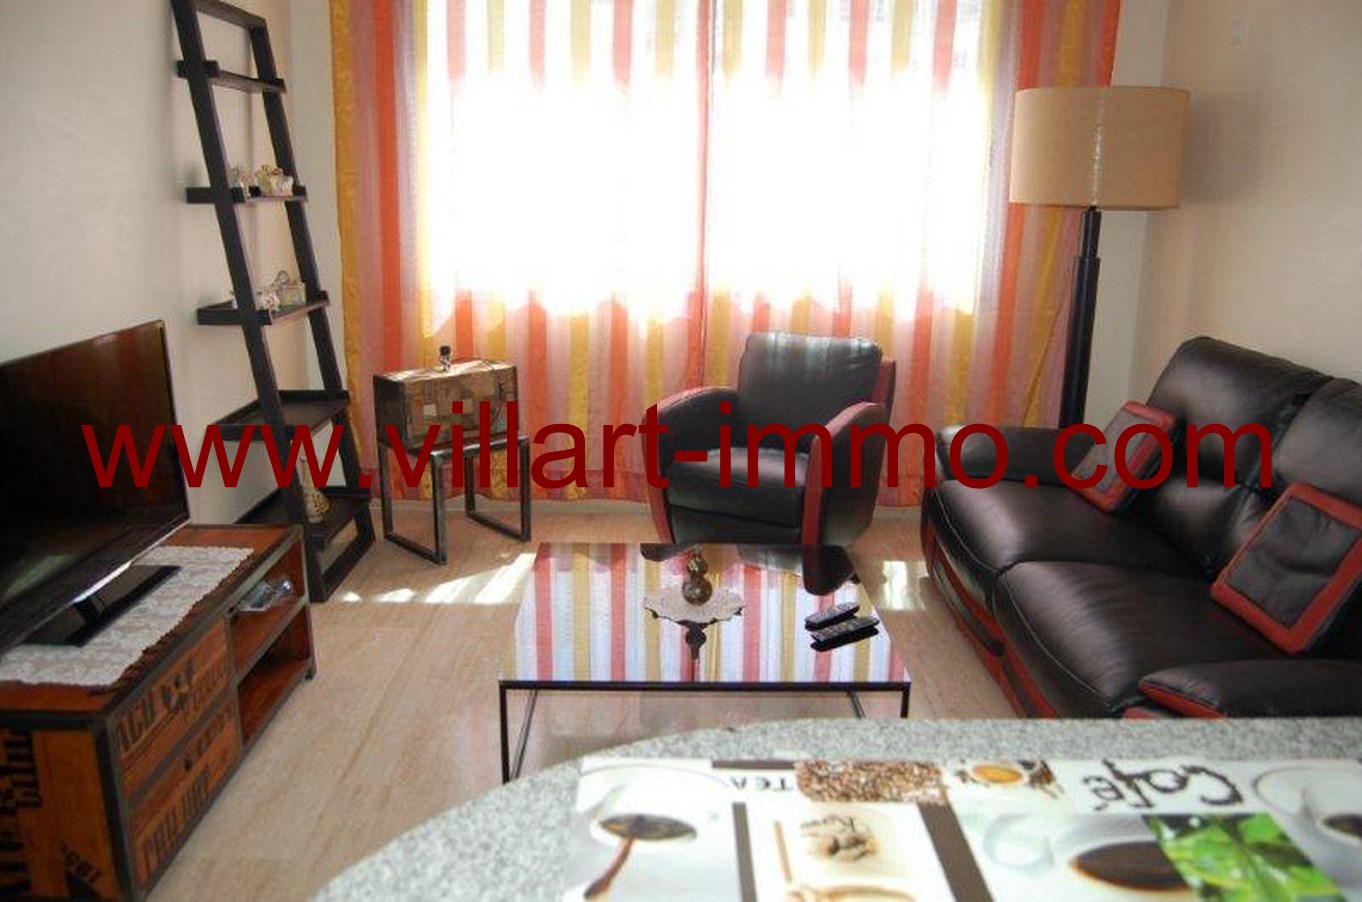 4-Location-Appartement-meublé-Tanger-salon-L678-Villart-immo